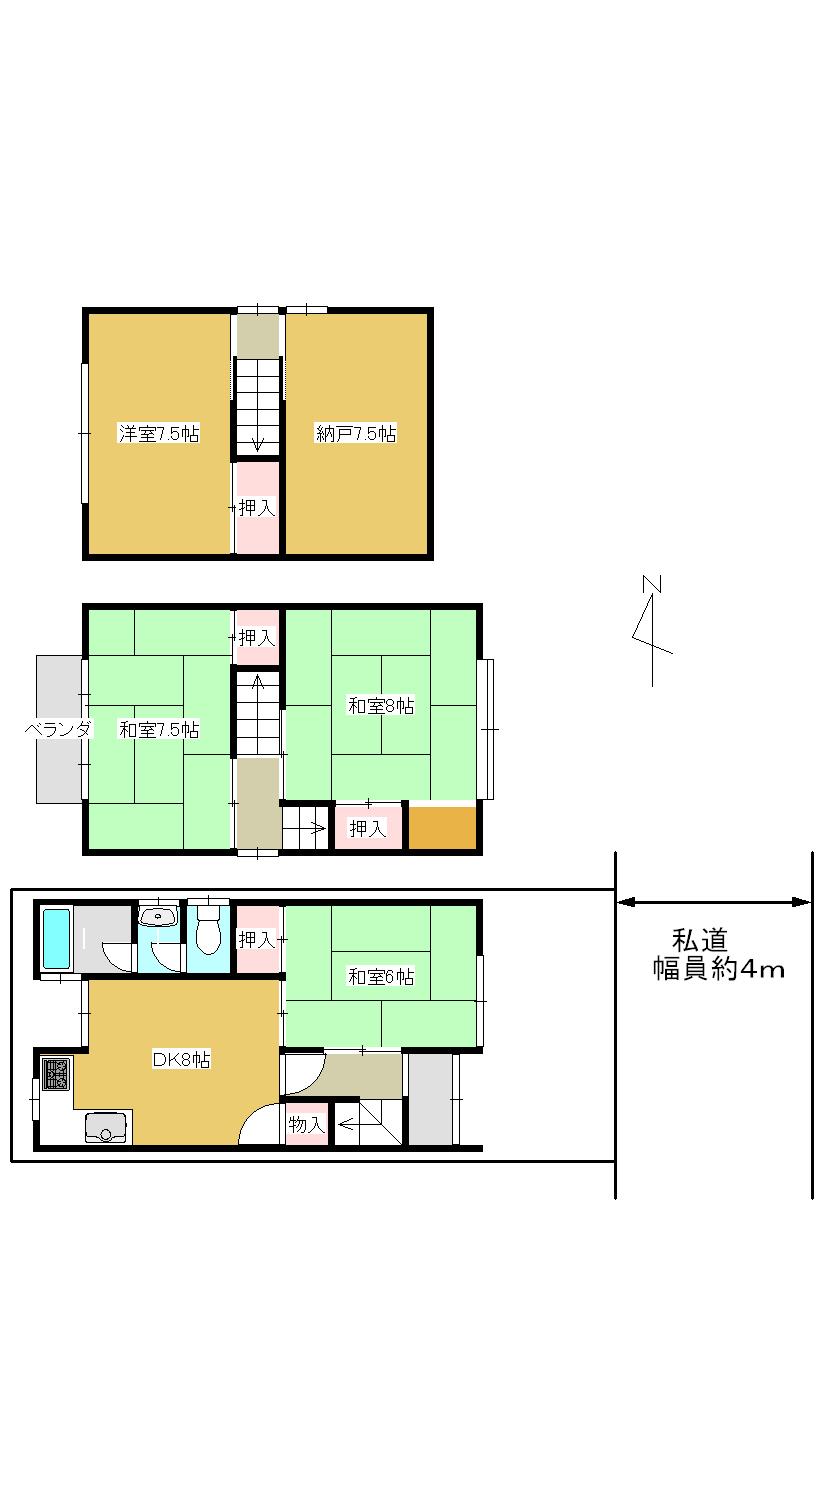 Floor plan. 16,900,000 yen, 5DK, Land area 43.52 sq m , Building area 81.96 sq m